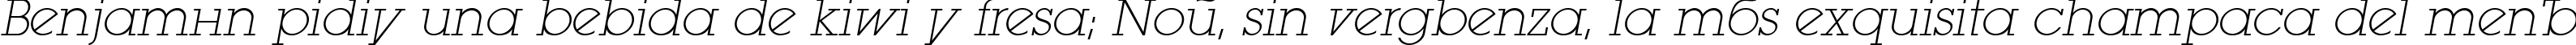 Пример написания шрифтом LugaExtraAd ExtraLight Oblique текста на испанском